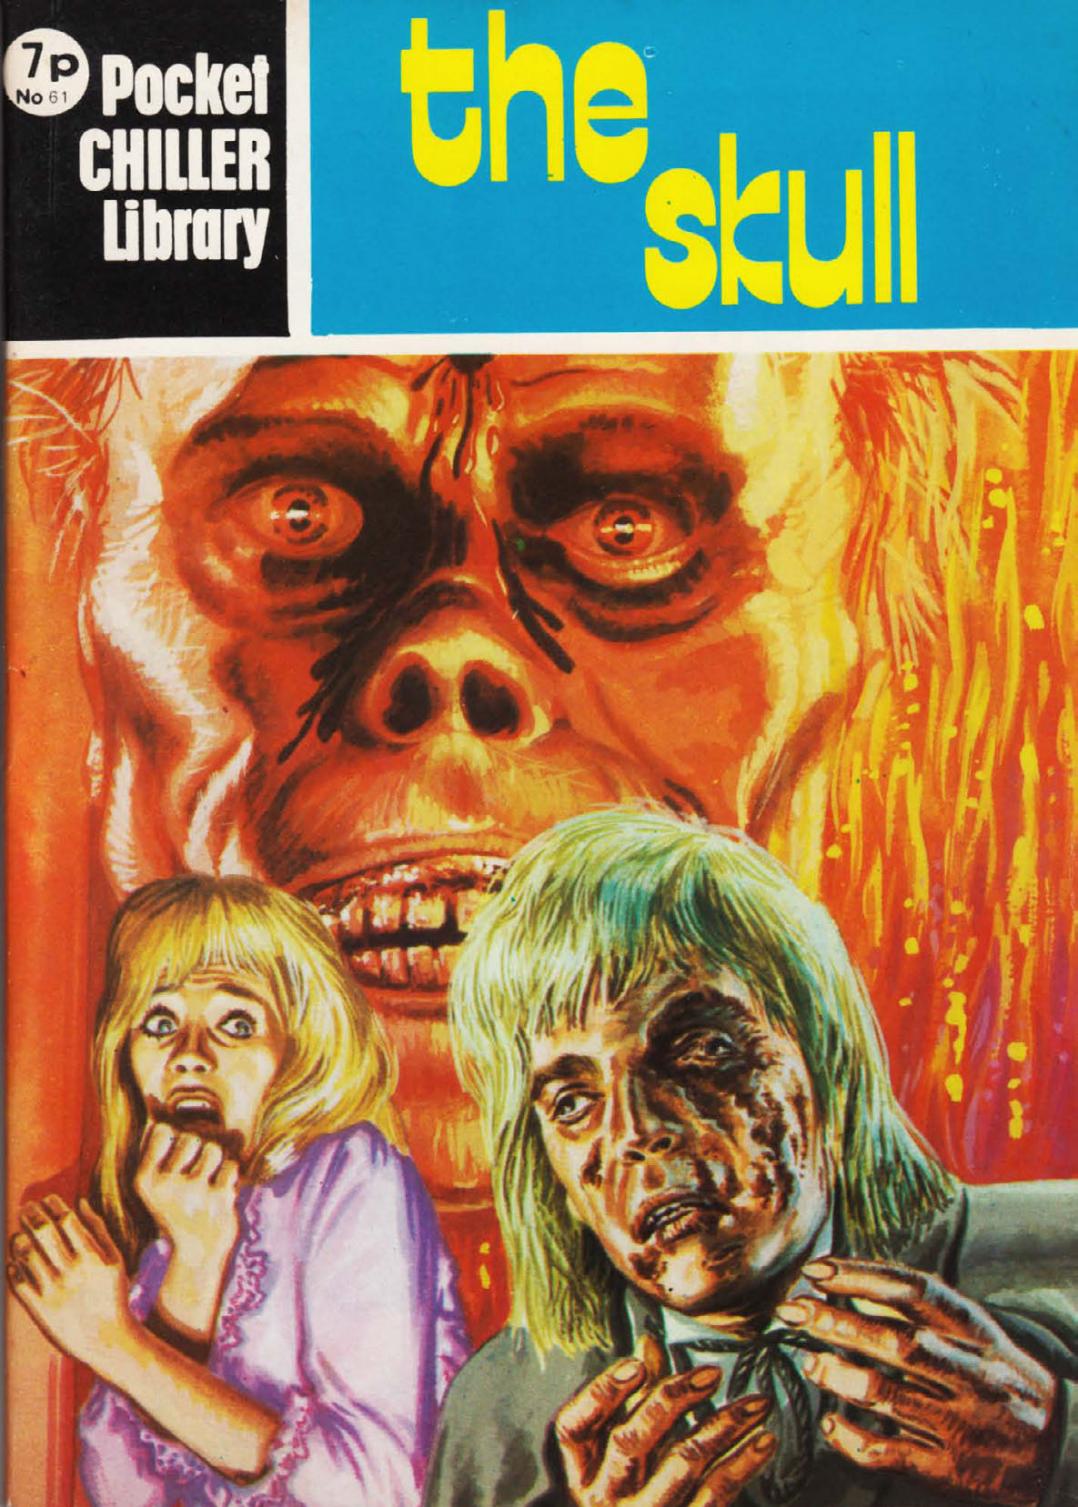 Pocket Chiller Library 61 - The Skull